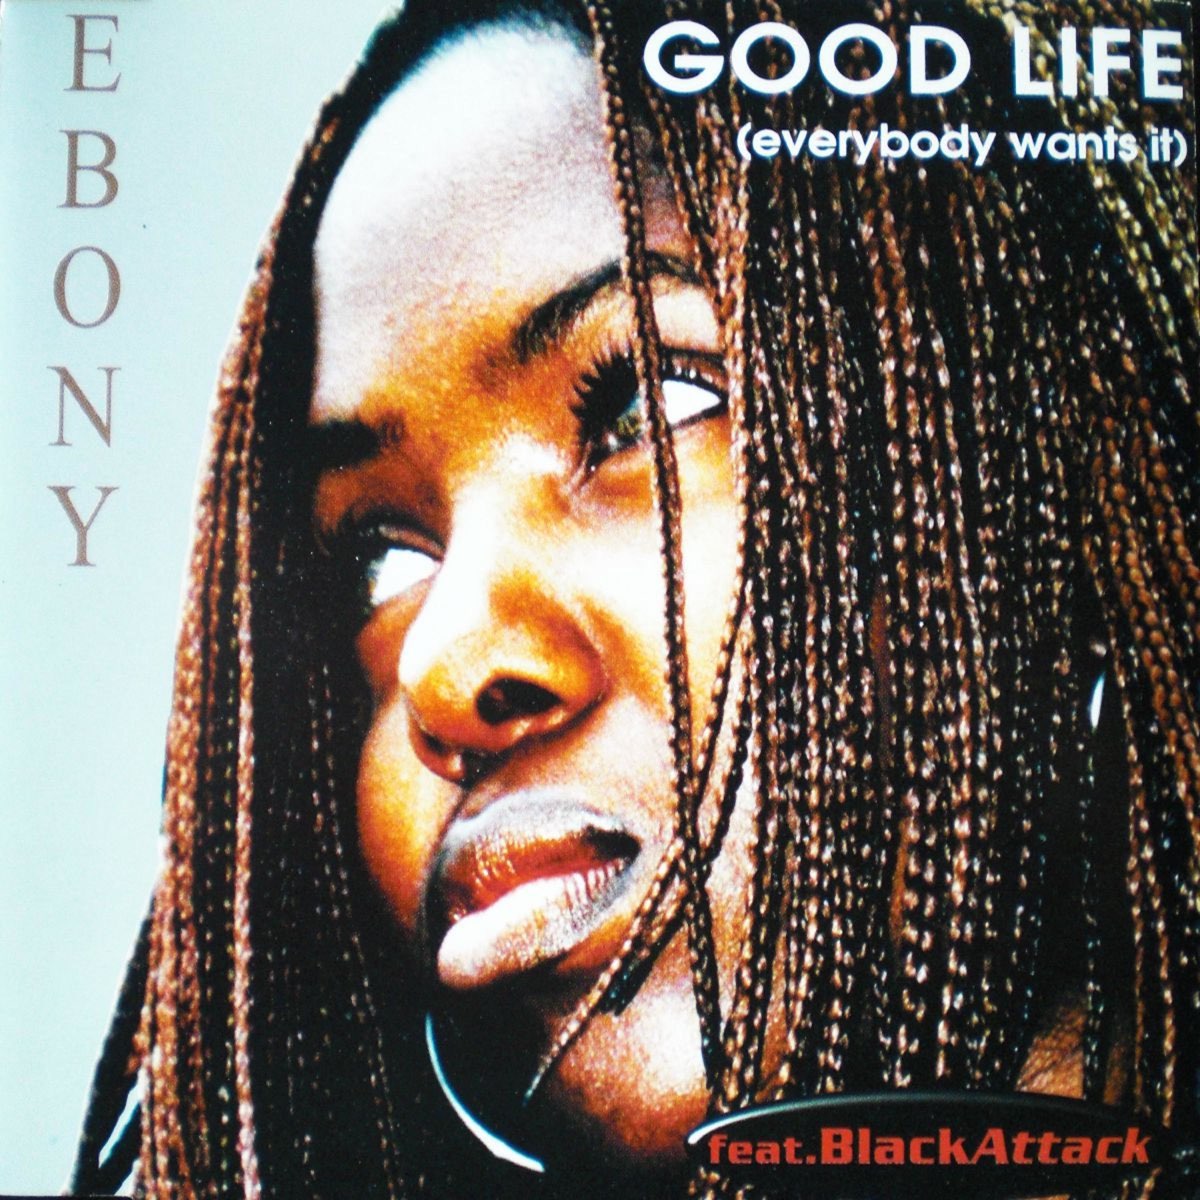 It wants to eat me. Black Attack. Ebony good Life. Black Attack good Life обложка альбома. Ebony feat. Black Attack - good Life (Everybody want it) (DJ Modern Max Edit).